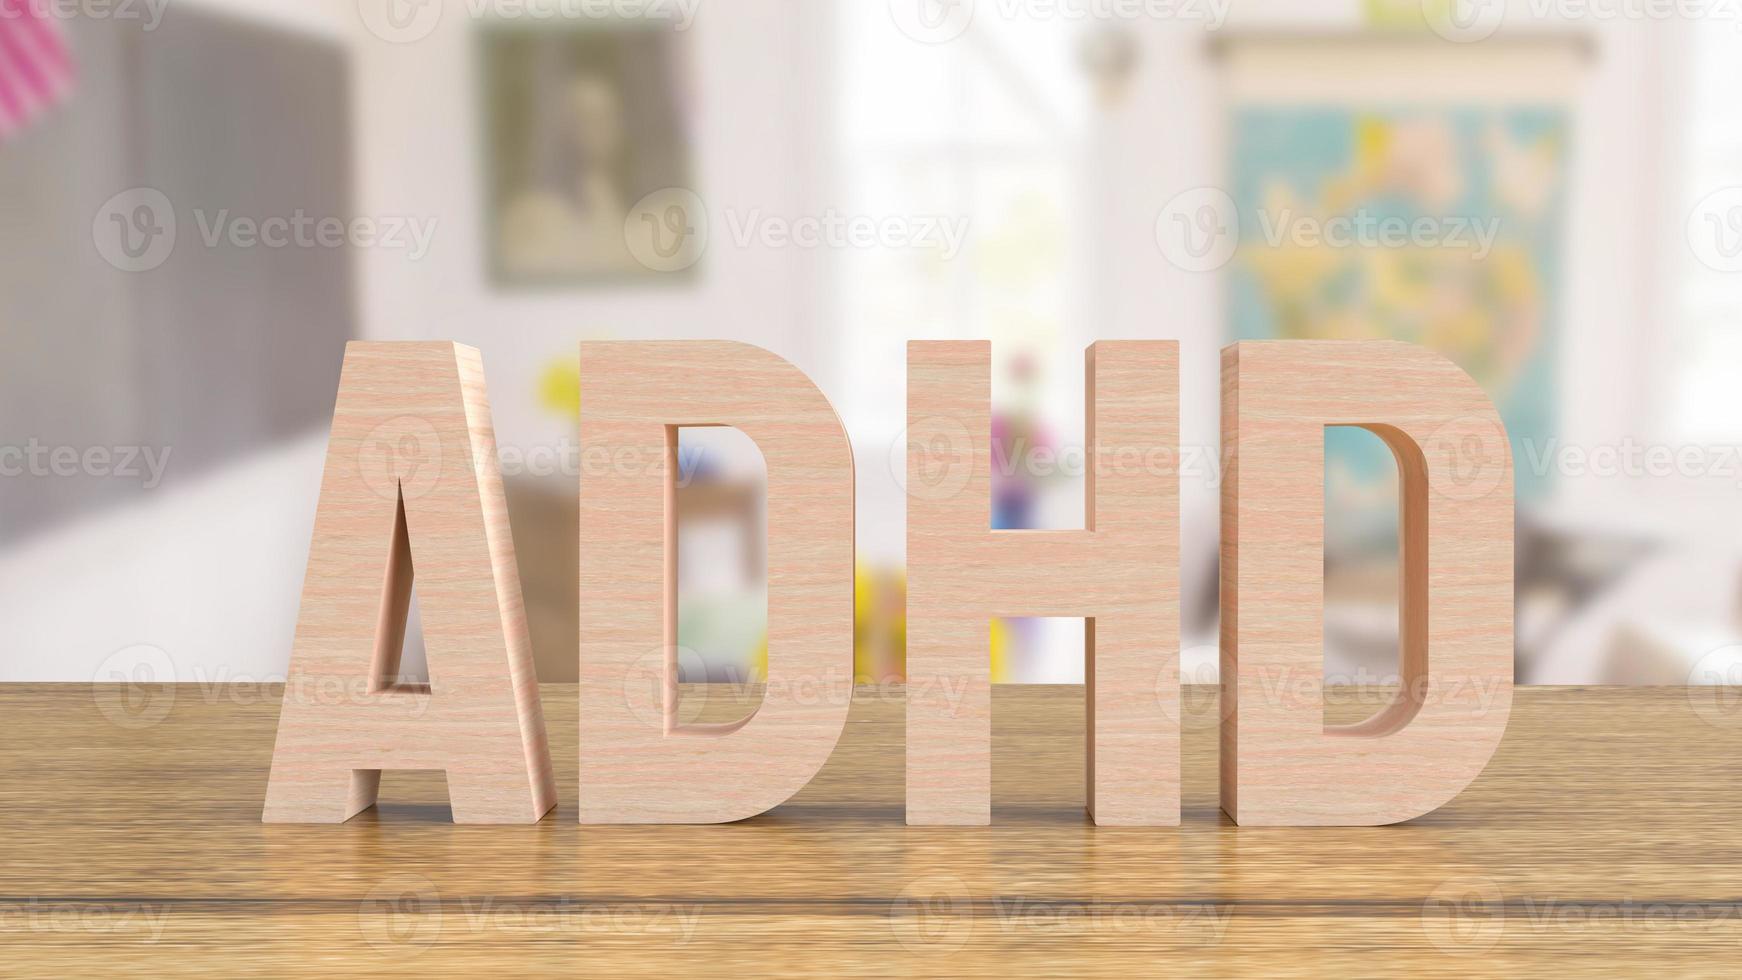 ADHD-houttekst op tafel in de klas voor medische of onderwijsconcept 3D-rendering foto